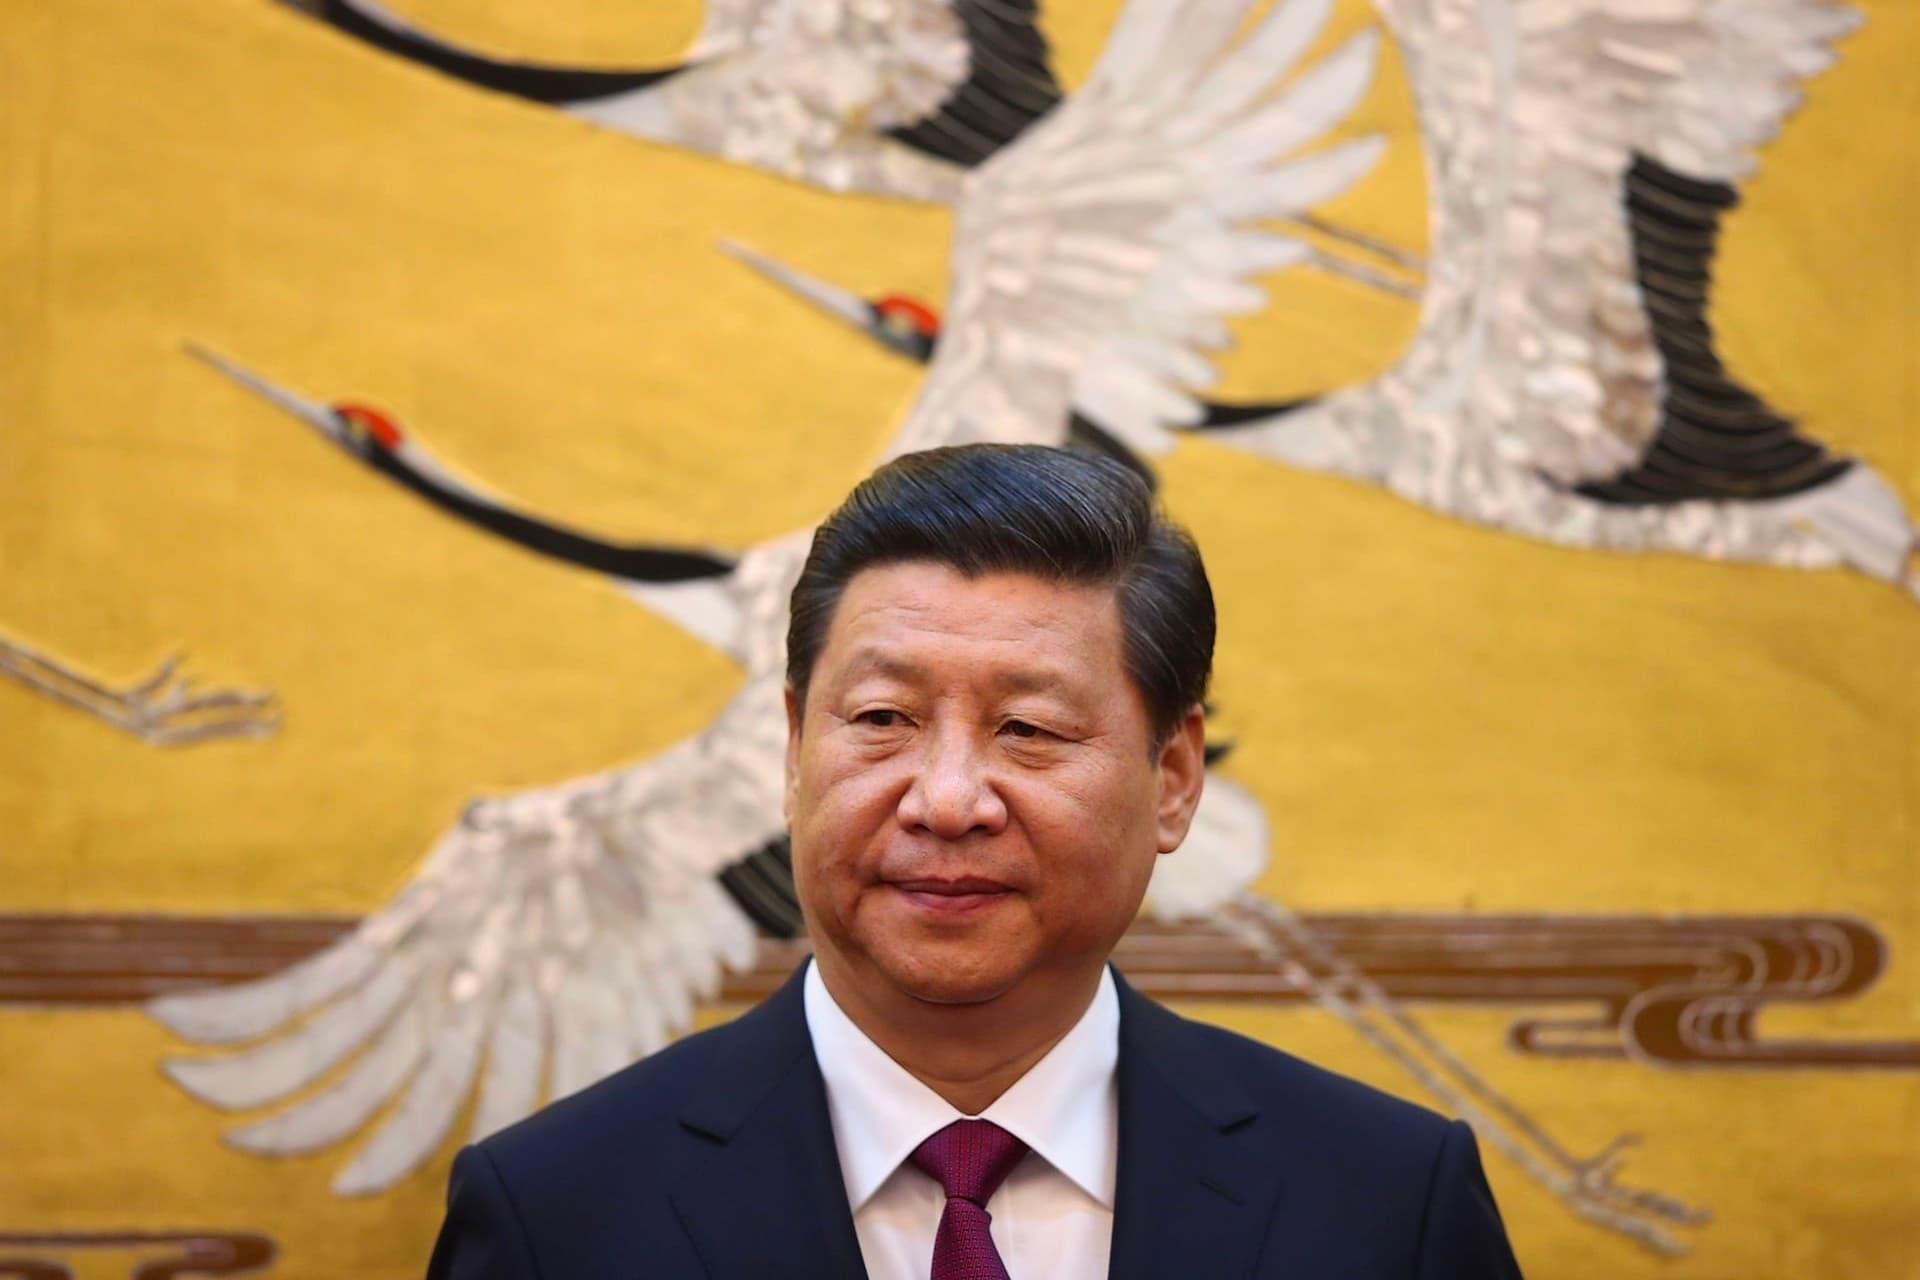 شی جین پینگ / Xi Jinping رئیس جمهور چین با کت شلوار